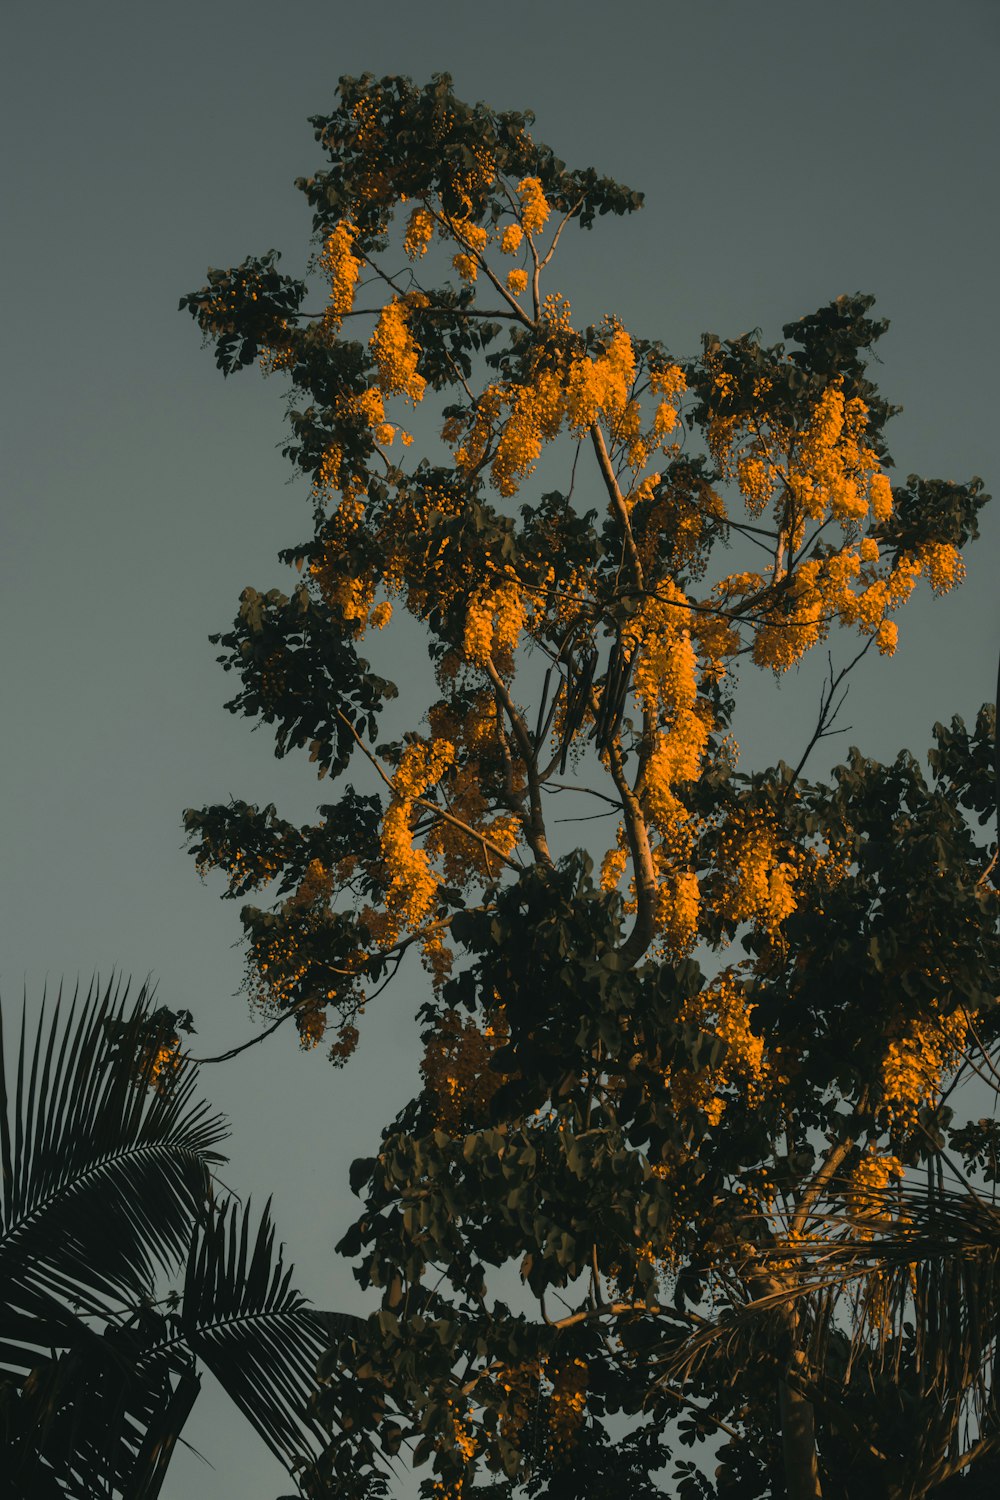 árvore de folhas amarelas sob o céu azul durante o dia